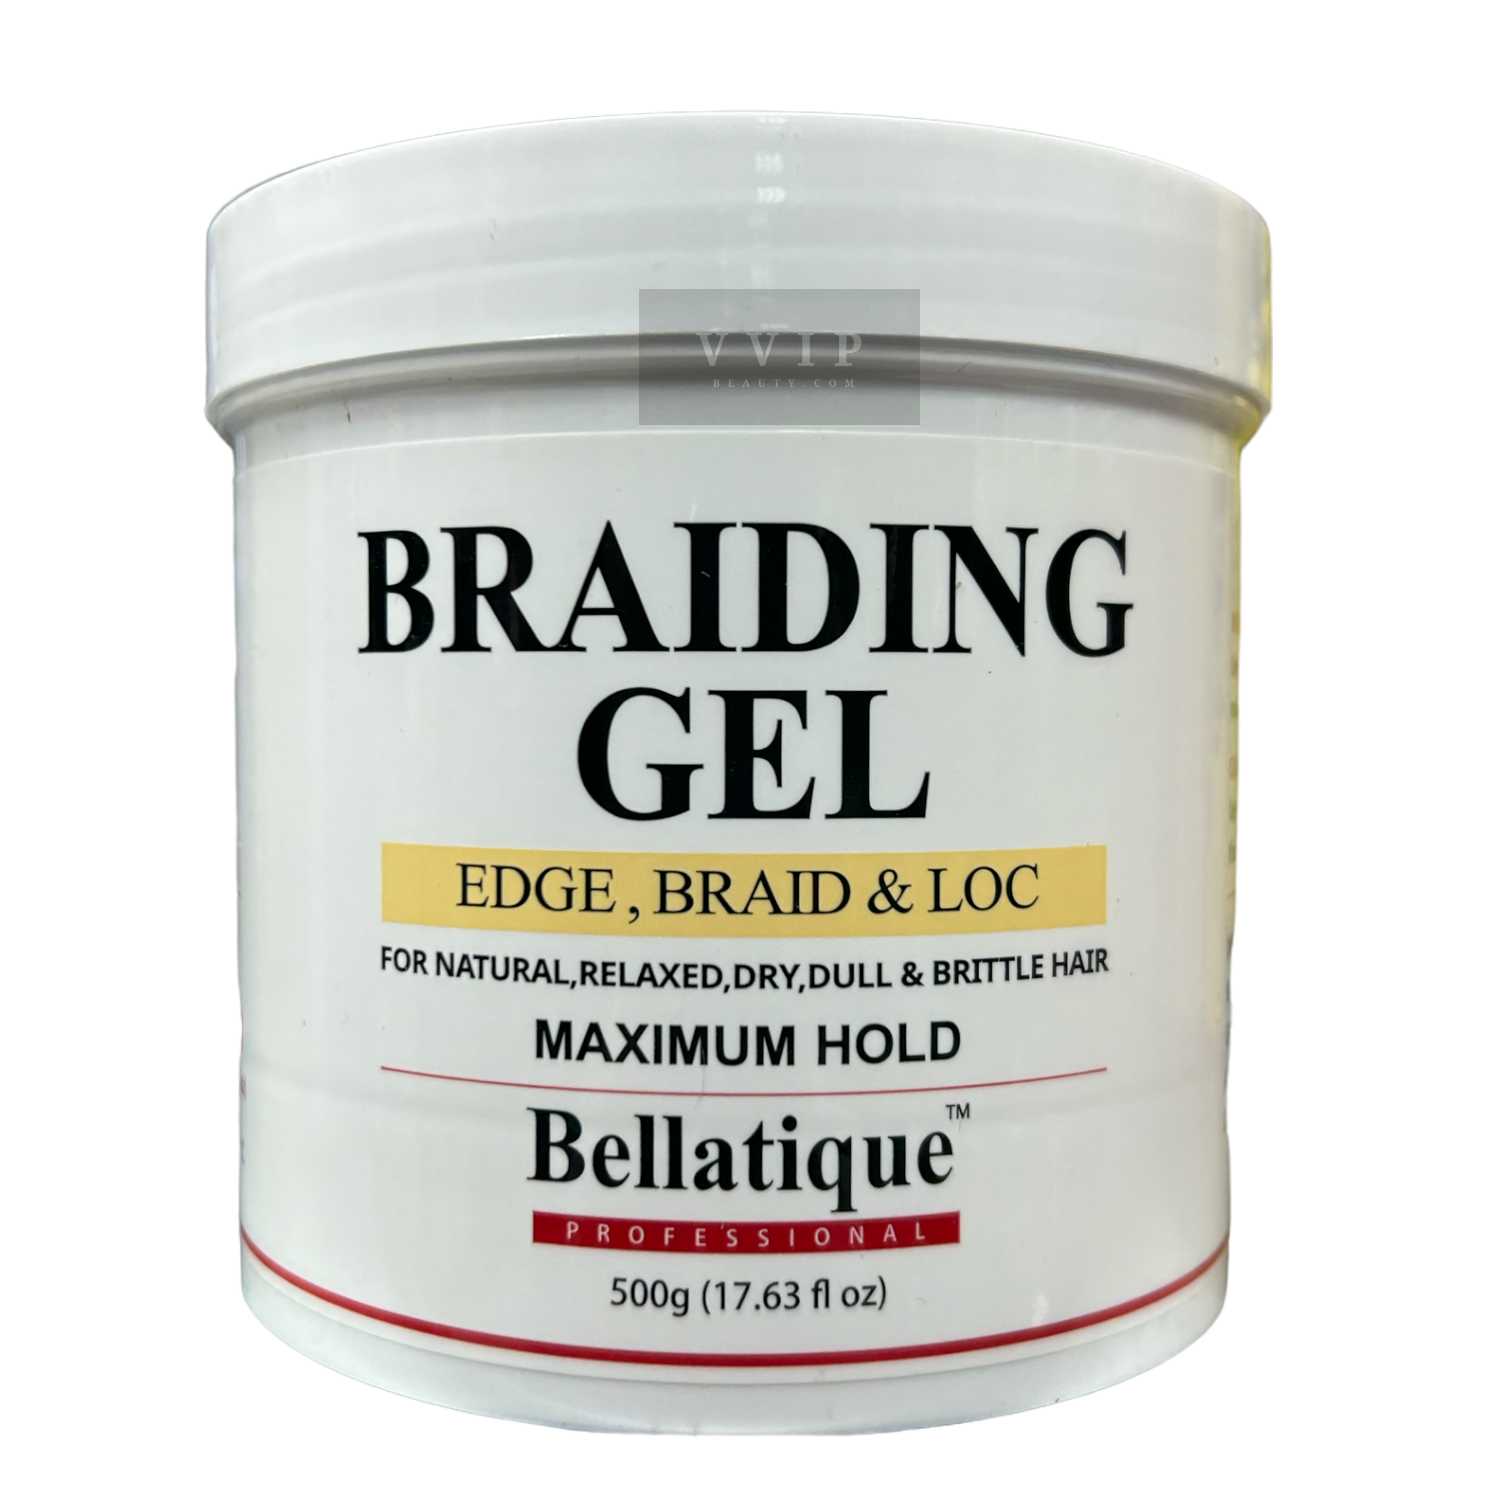 BELLATIQUE HAIR BRAIDING GEL